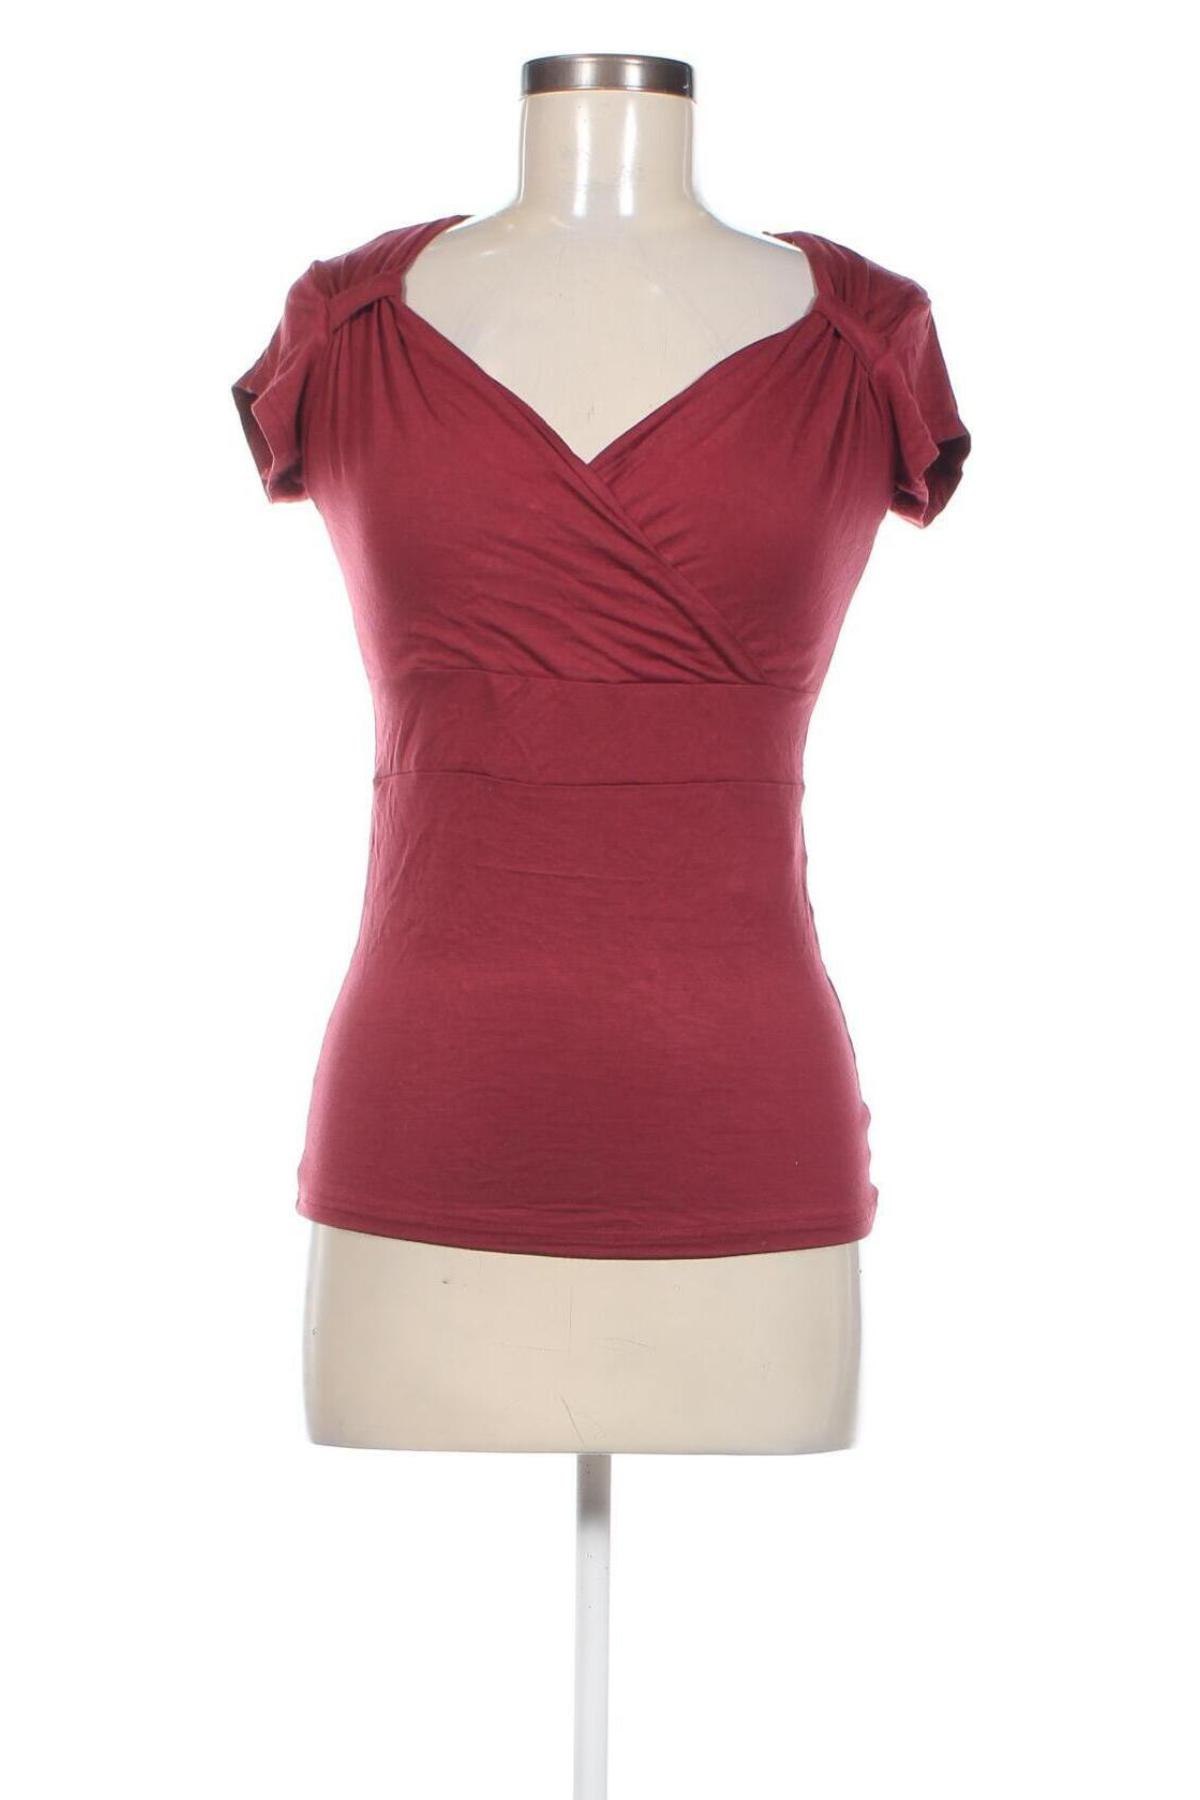 Γυναικεία μπλούζα Black Premium by EMP Clothing, Μέγεθος S, Χρώμα Κόκκινο, Τιμή 6,95 €